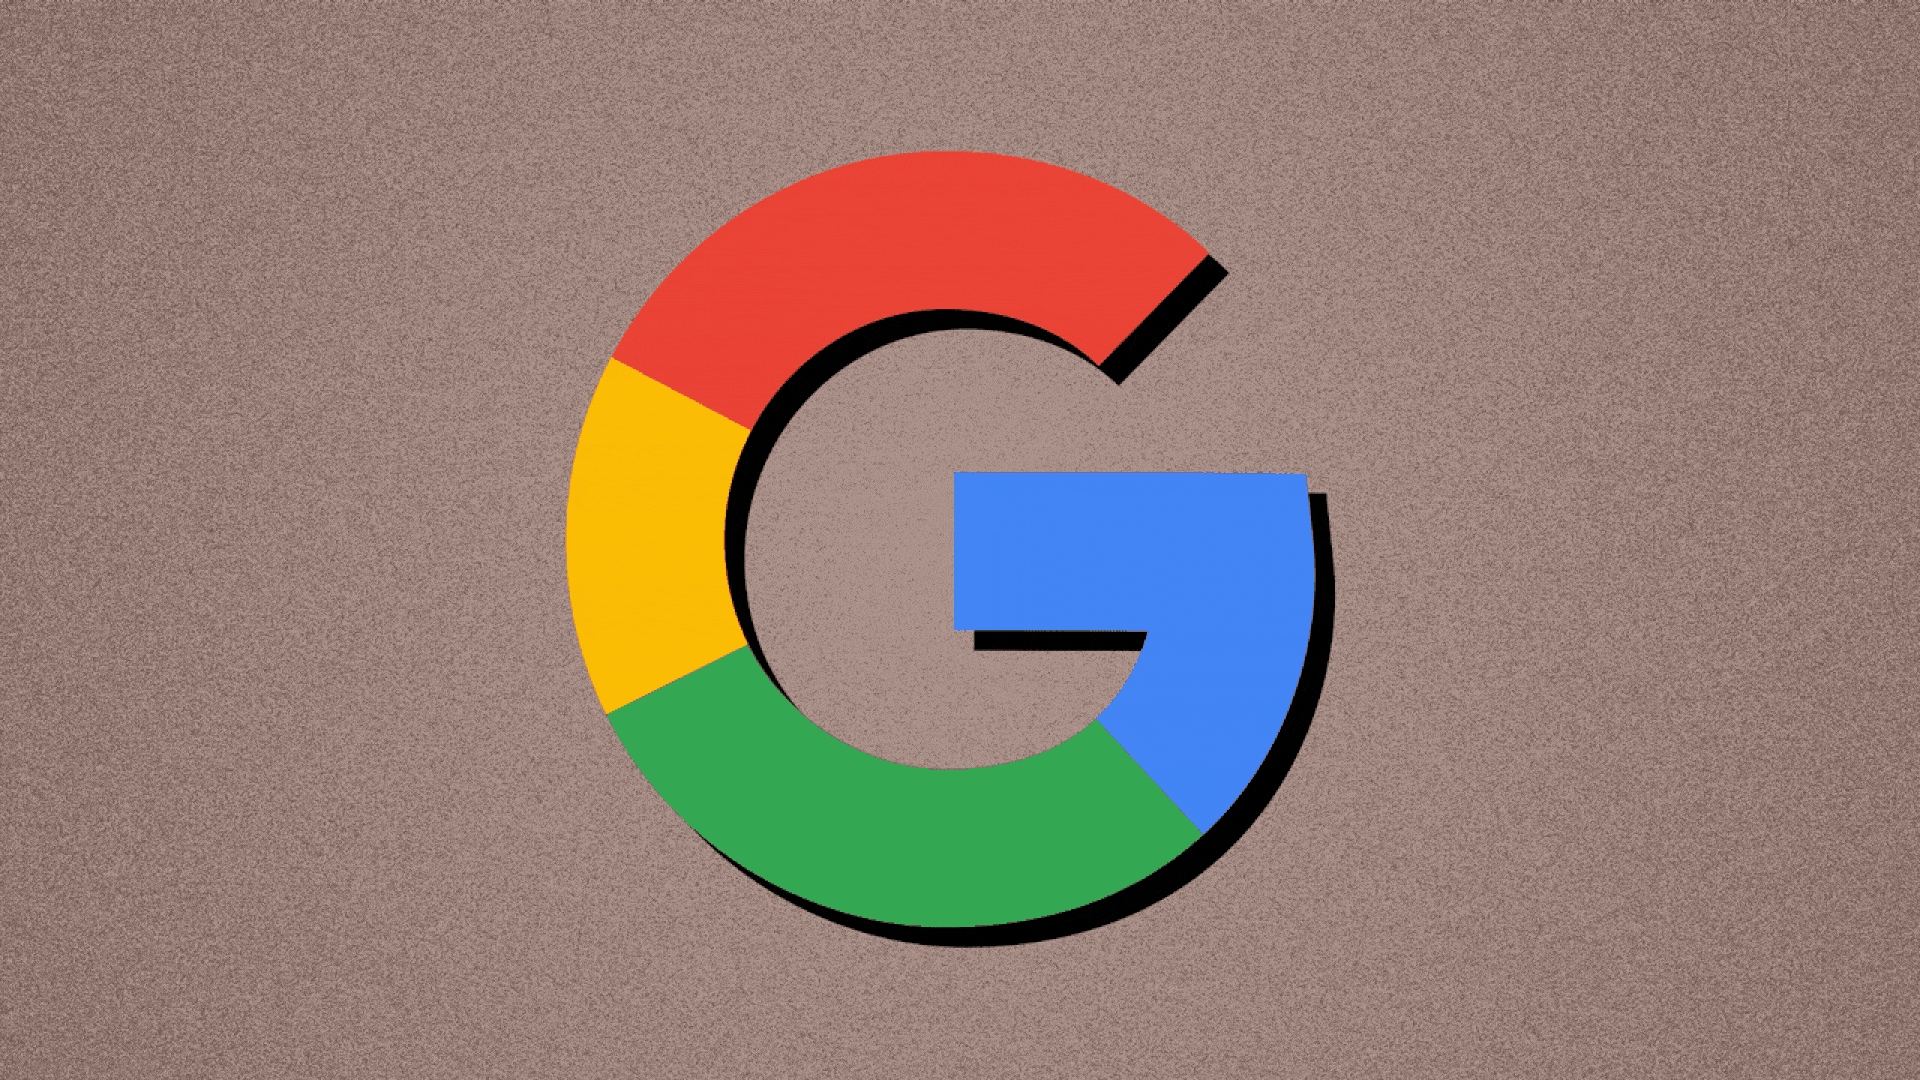 Google Logo & Stop Sign